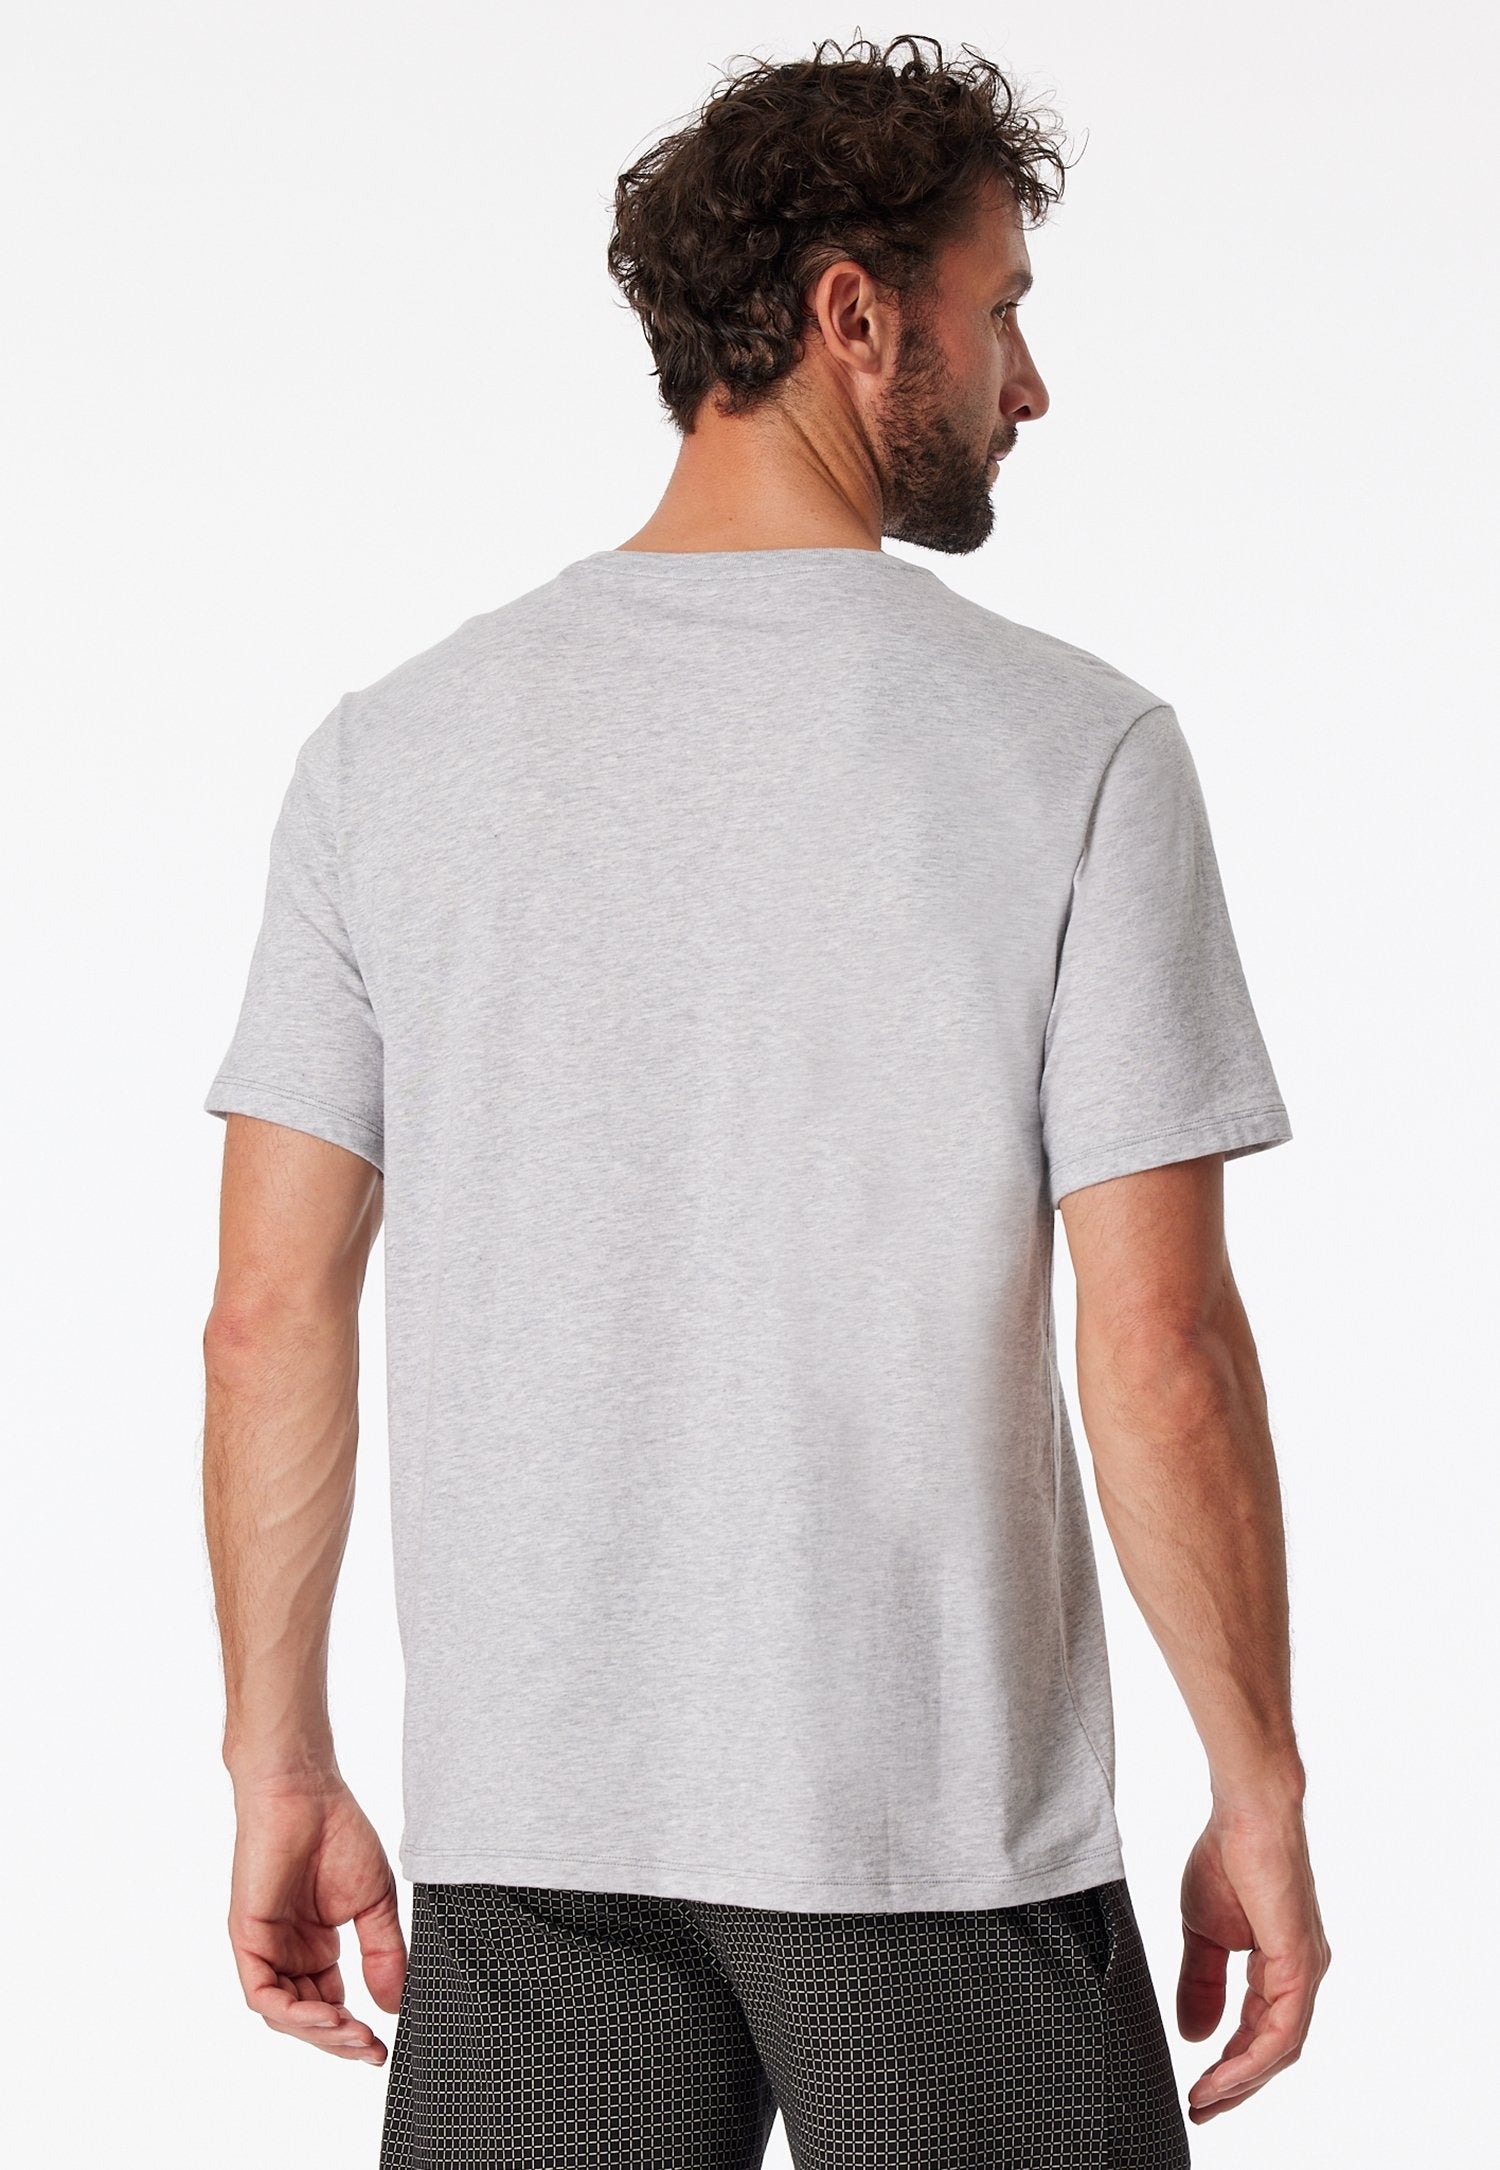 T-shirt V-Ausschnitt (Grau-mel.)